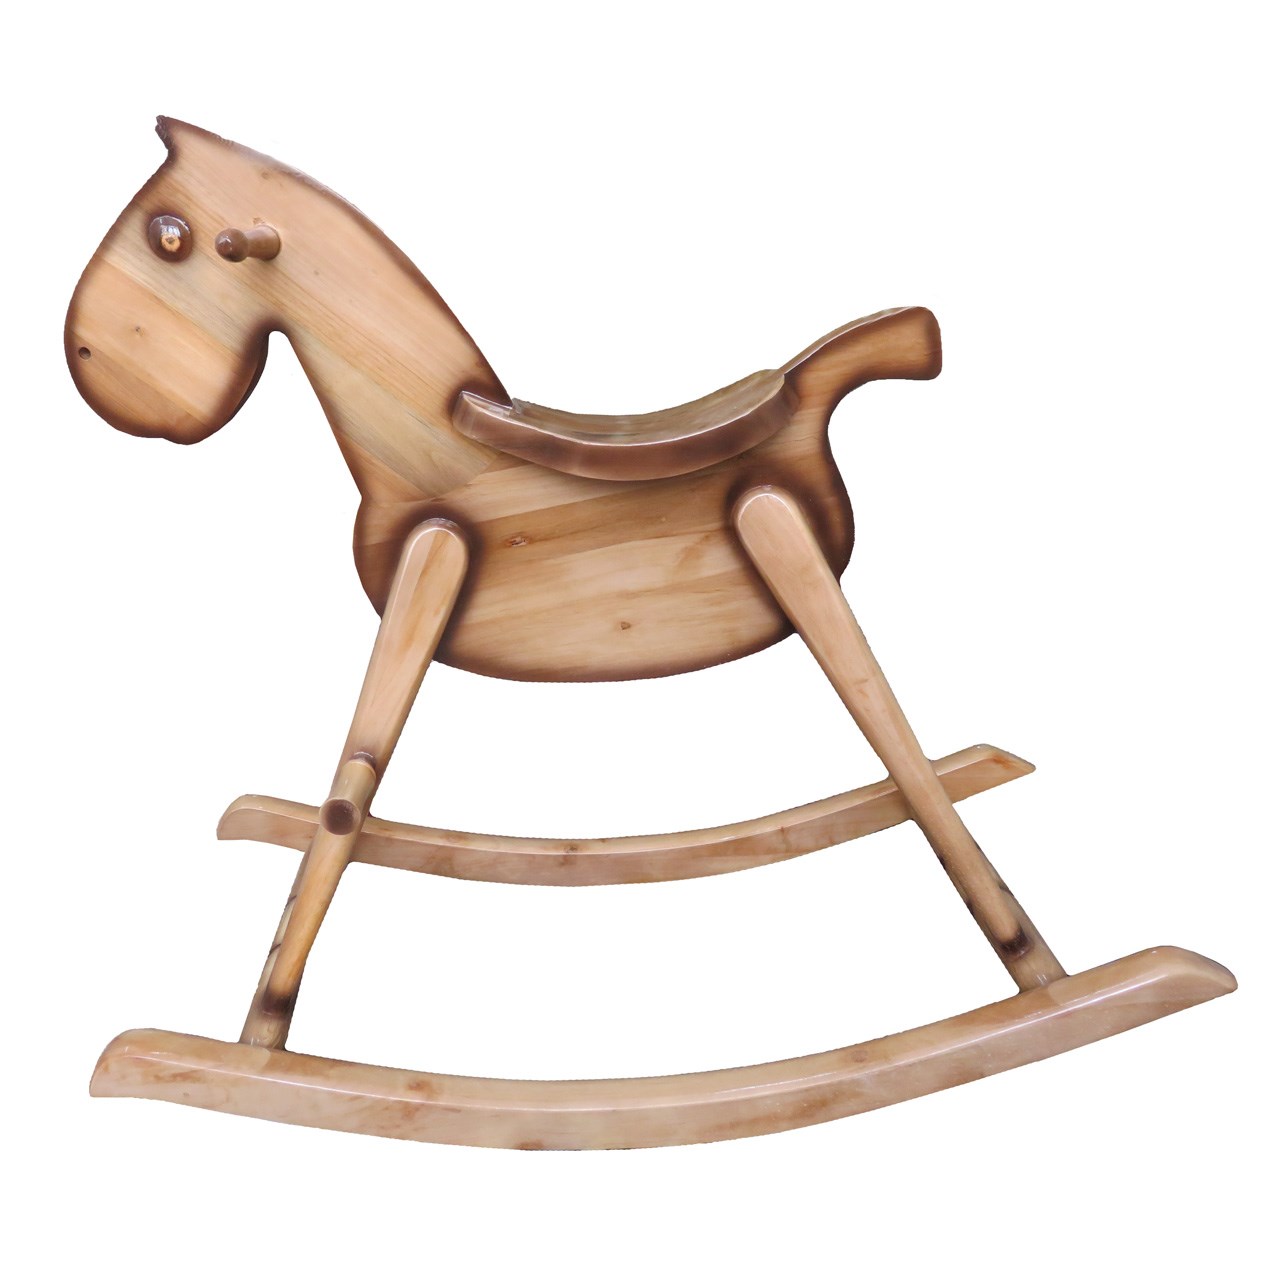 راکر کودک آرتا مدل wooden horse3